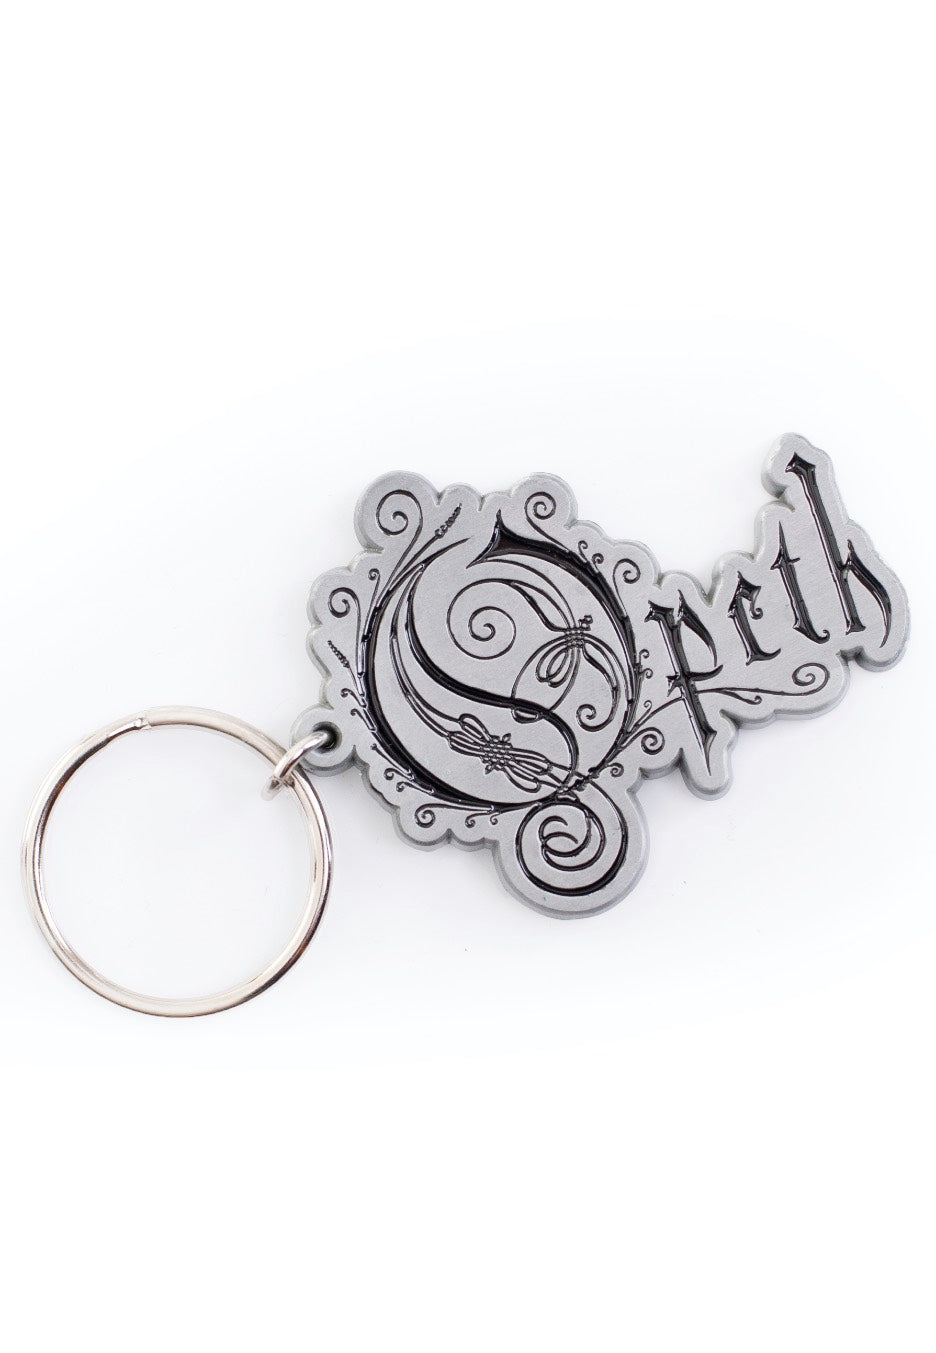 Opeth - Logo - Keychain